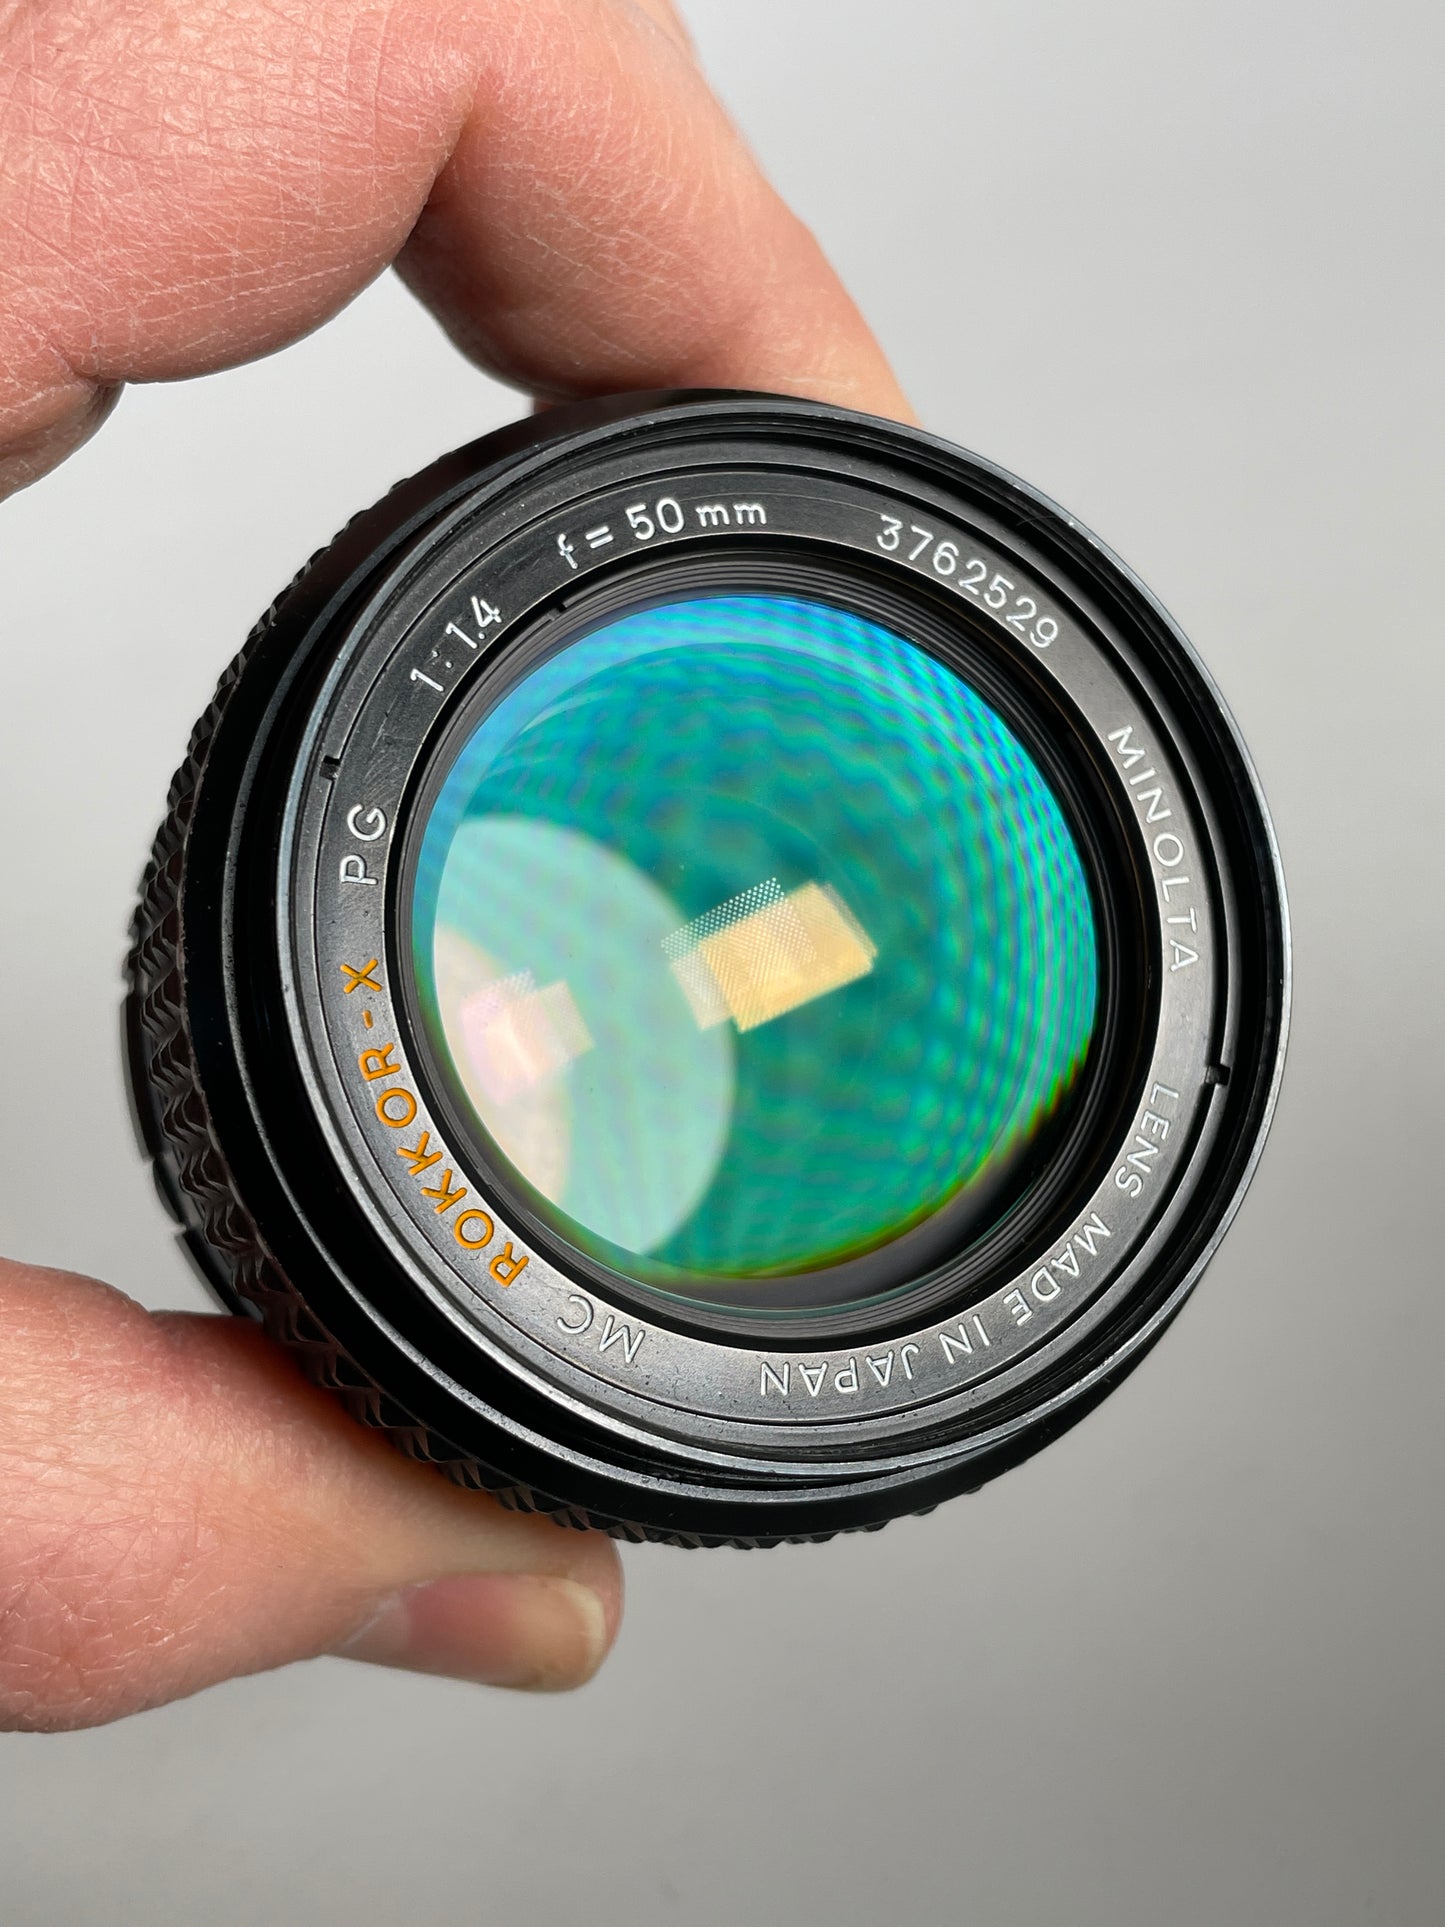 Minolta MC Rokkor-X PG 50mm f1.4 manual focus lens